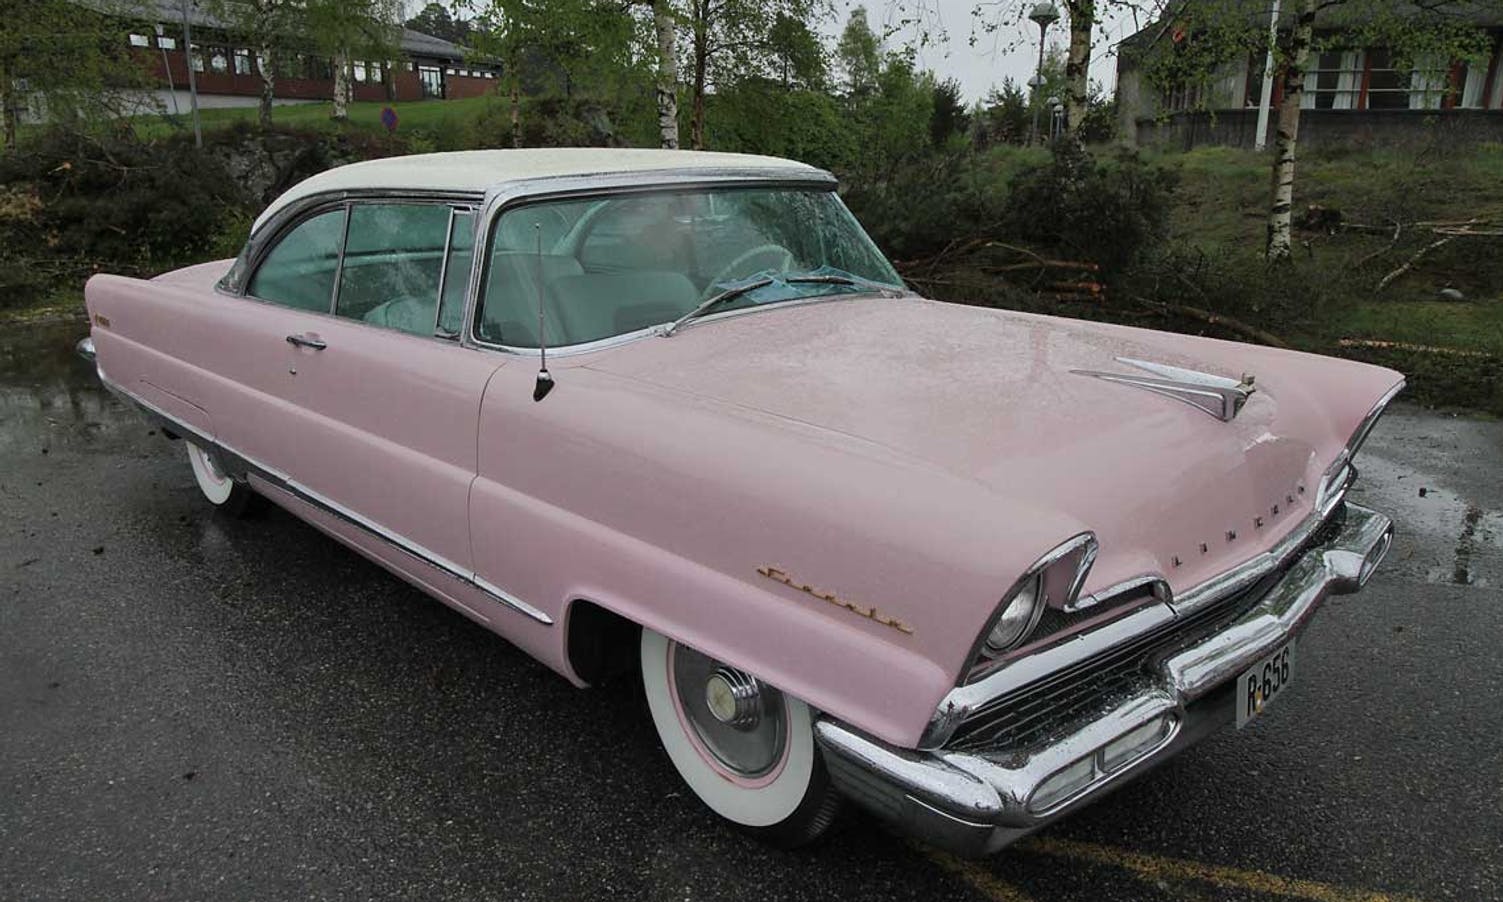 Denne er rosa, men ikkje ein Cadillac. (Foto: KVB)